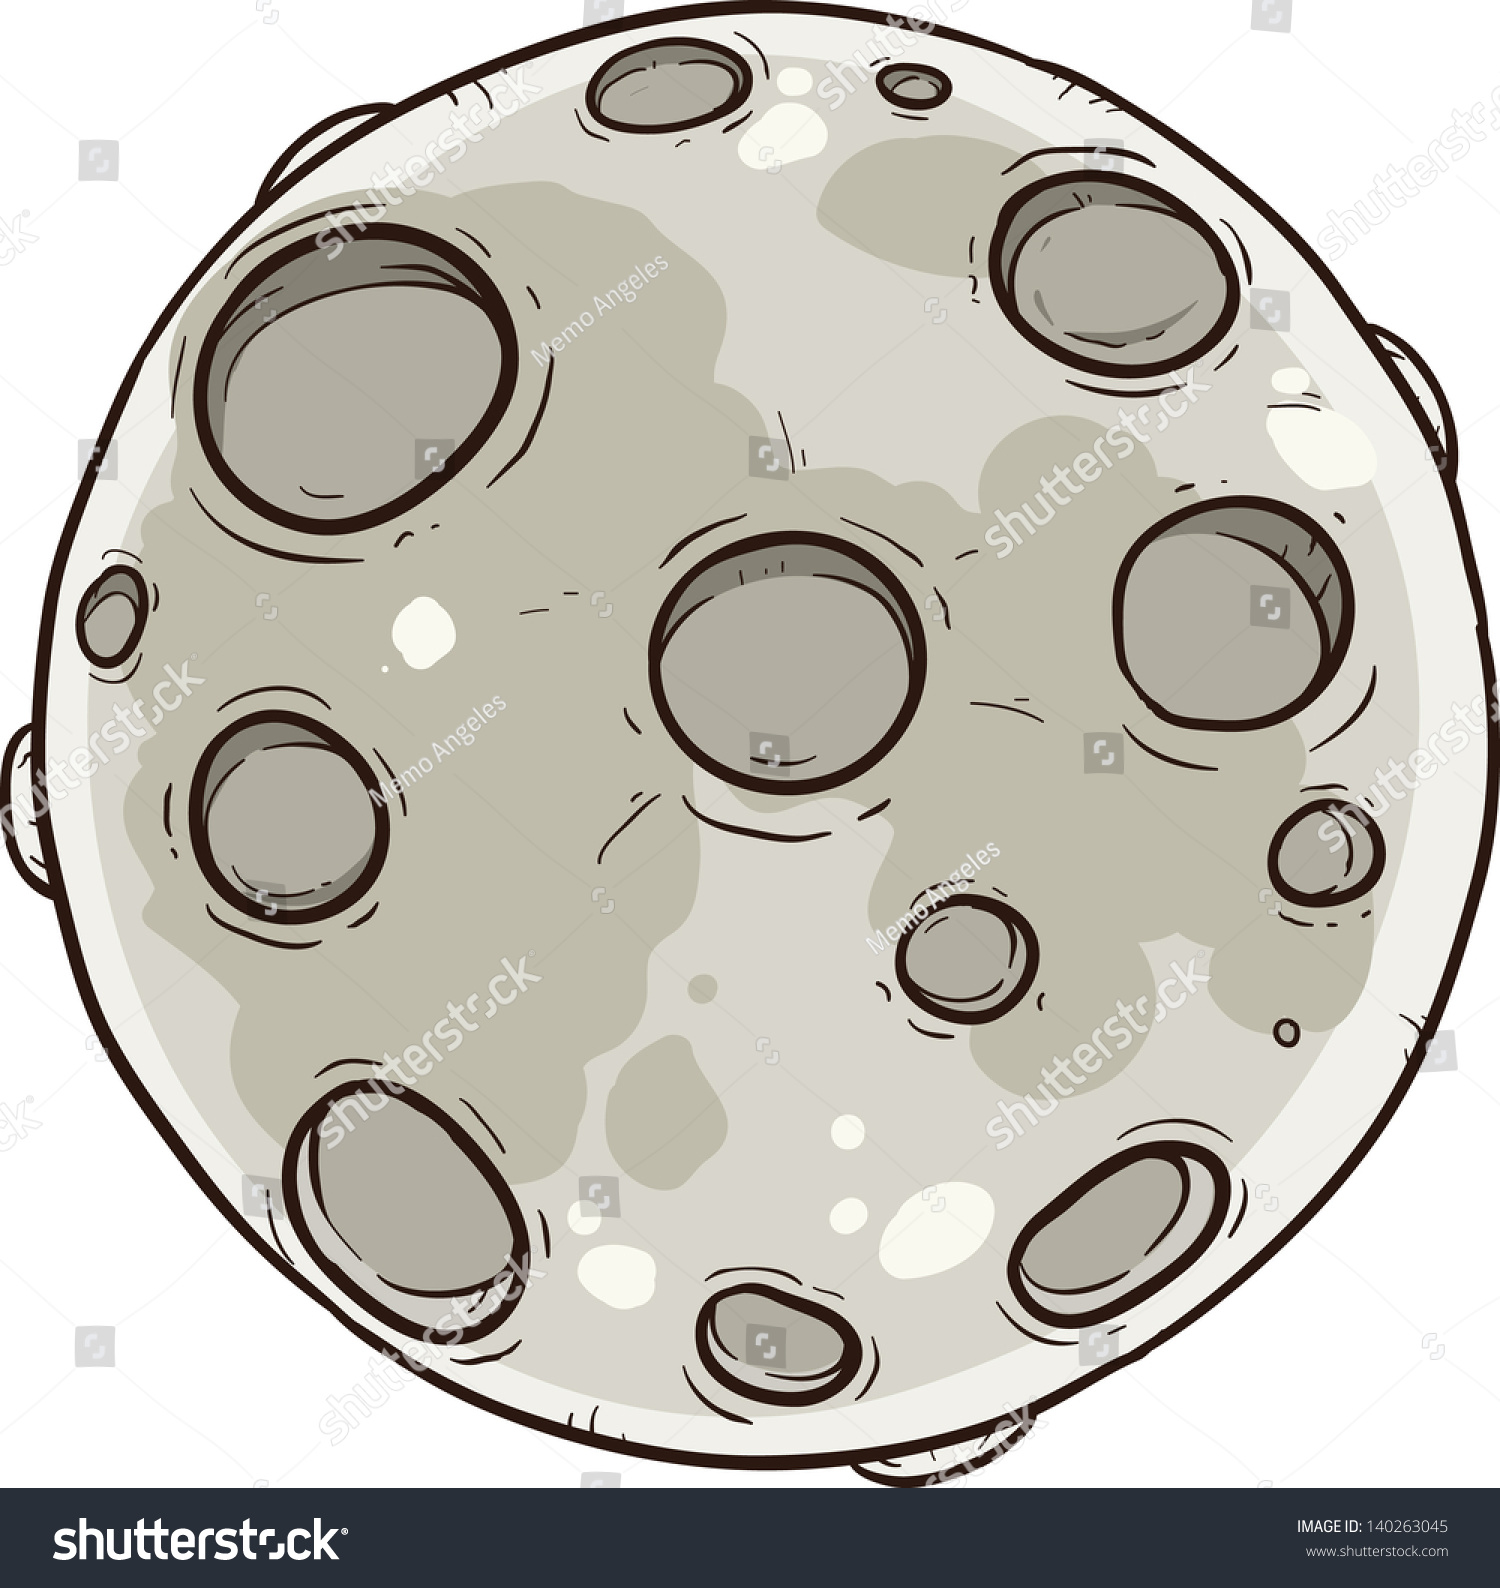 Cartoon moon. Vector clip art illustration. All Royalty Free Stock